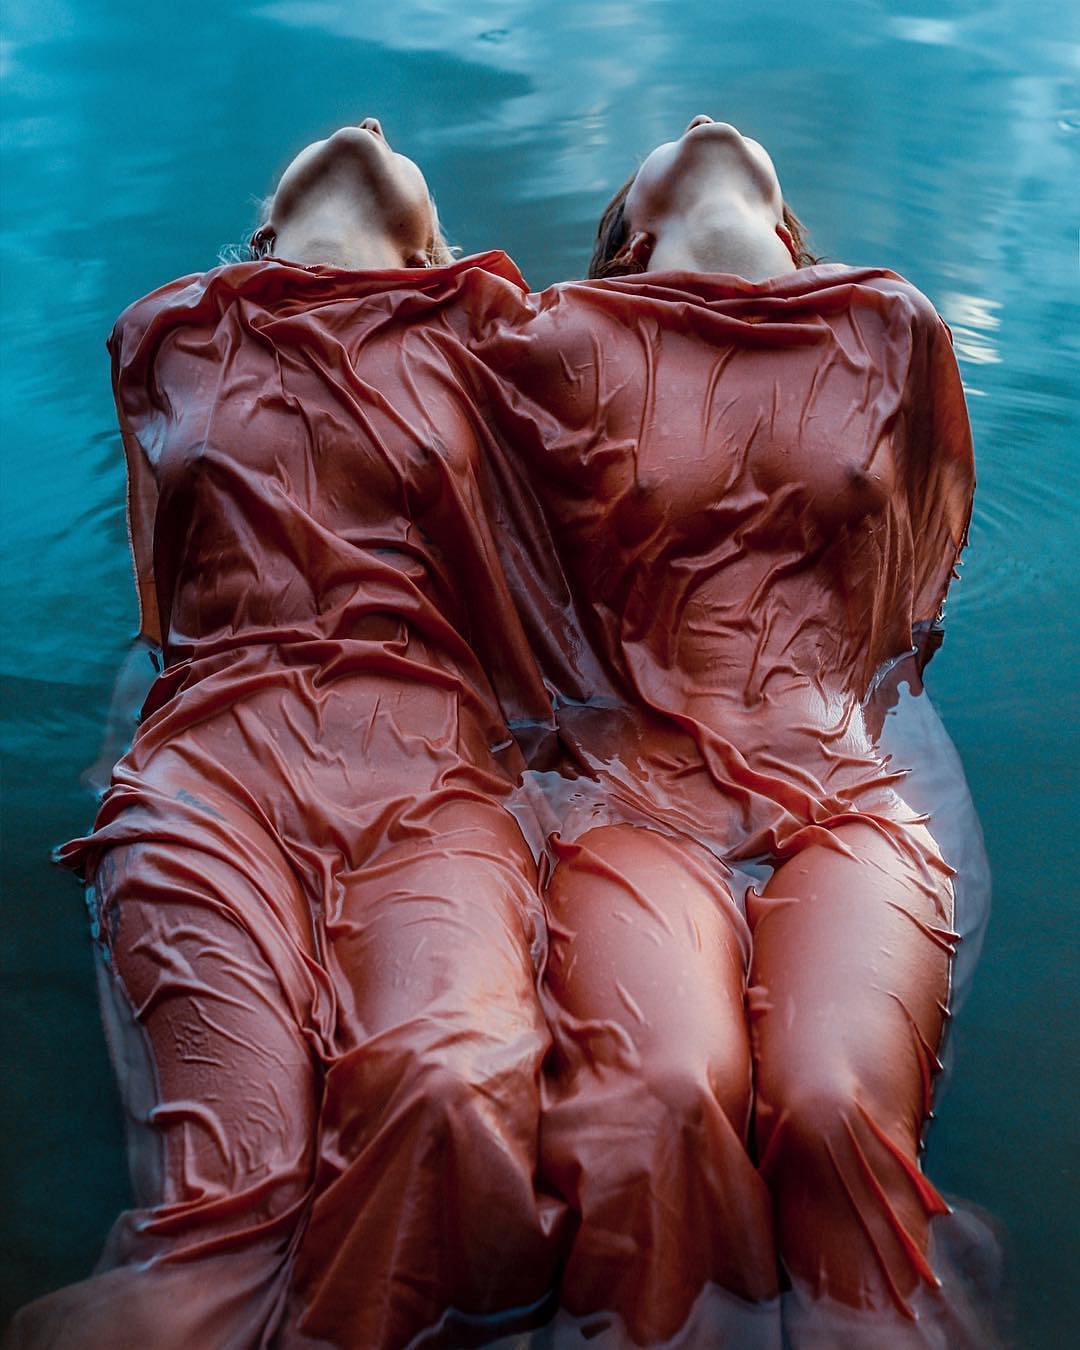 1080x1350, 149 Kb / вода, платья, Анна Панченко, близнецы, Сияние